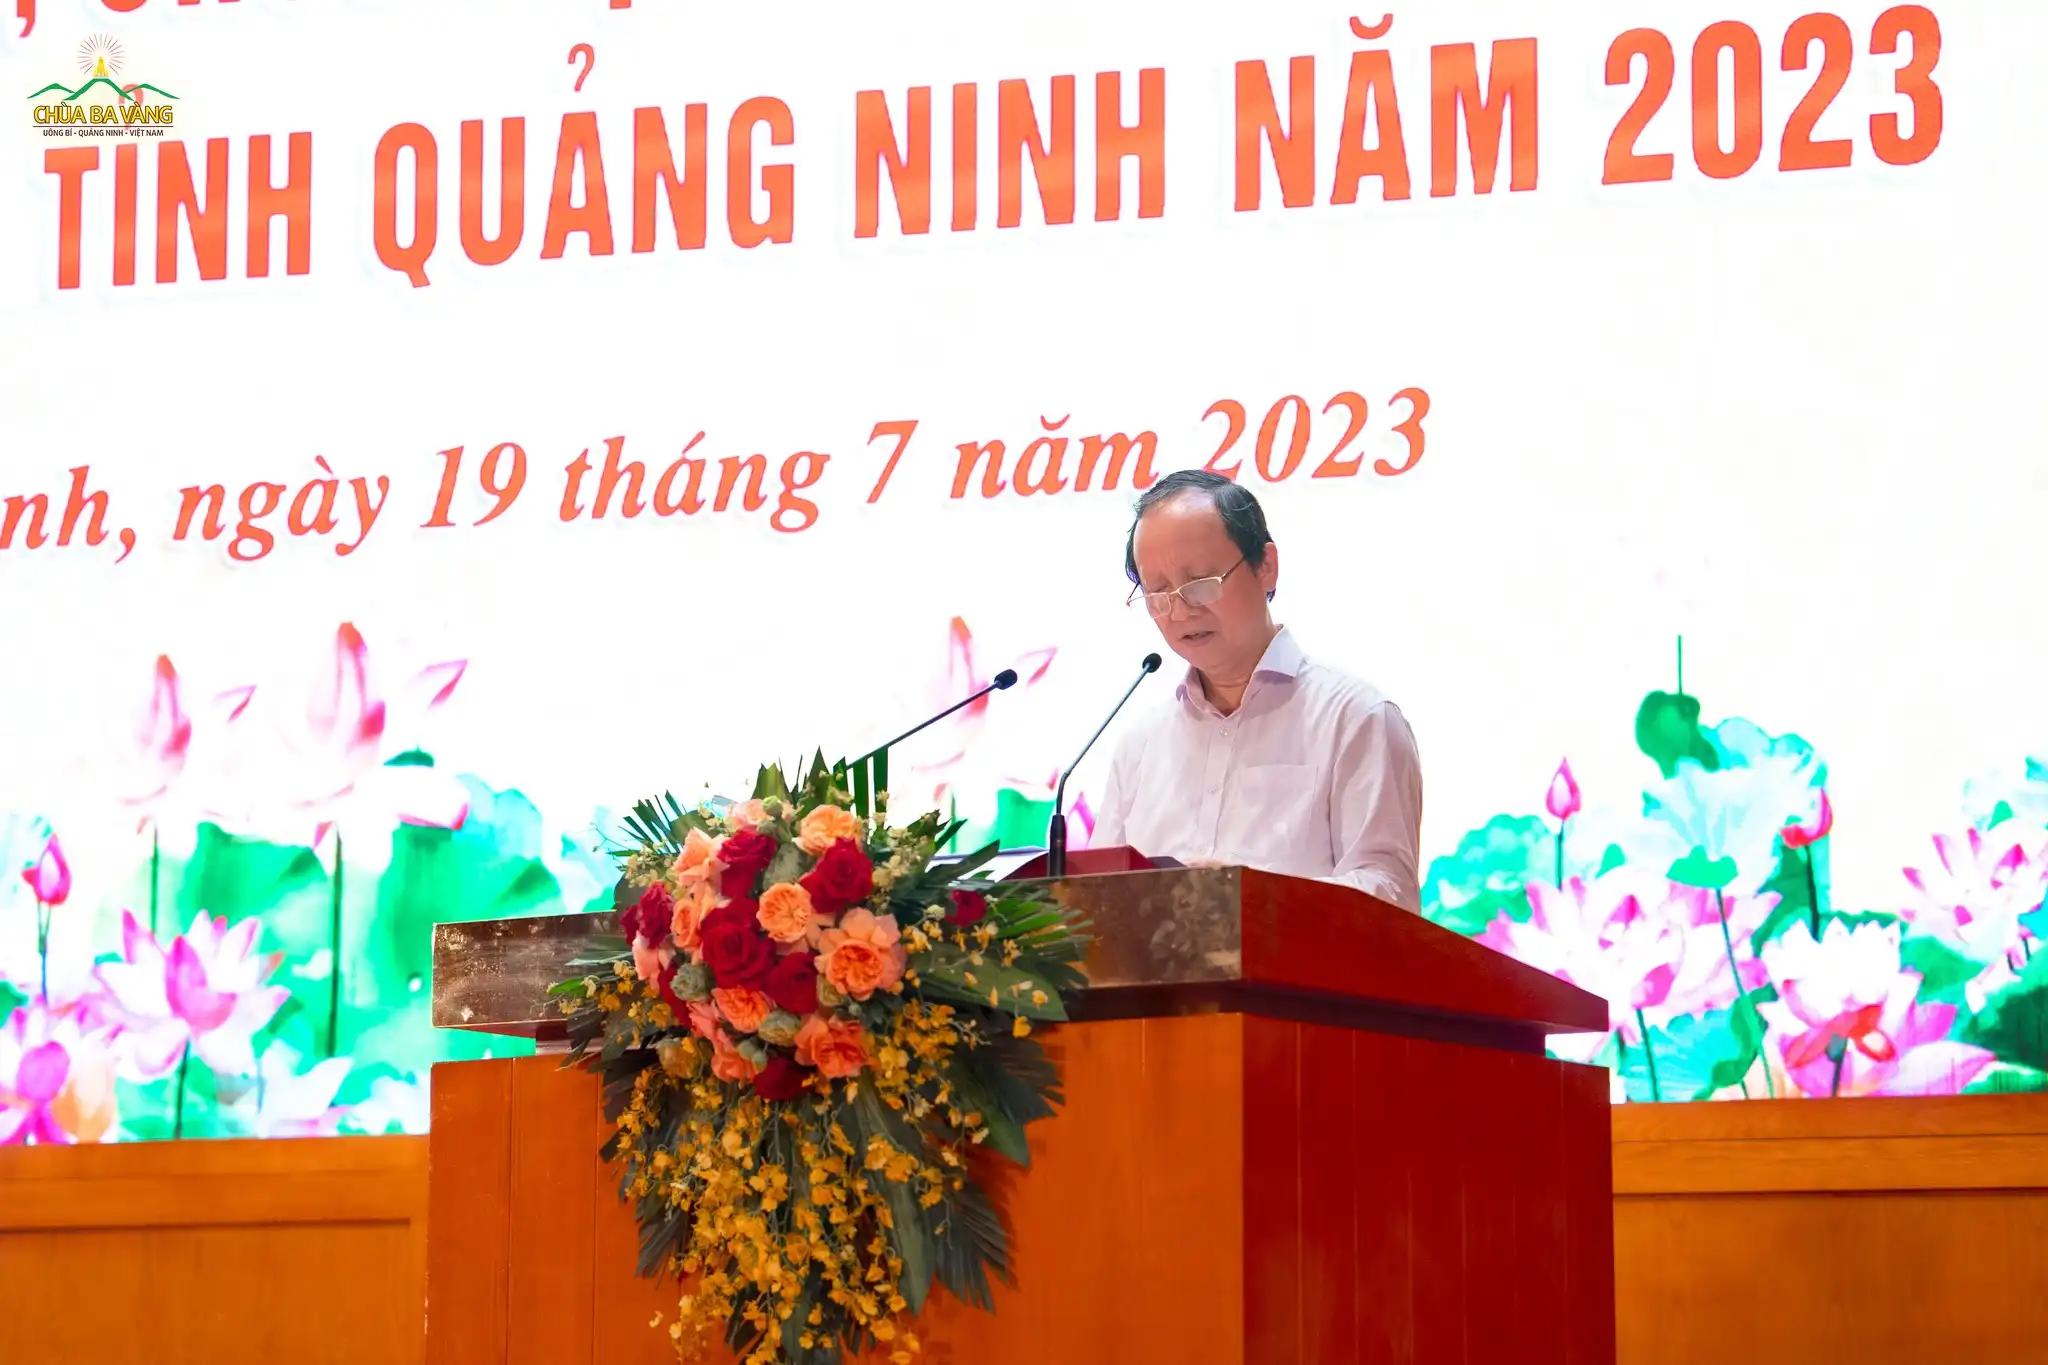 Ông Nguyễn Tiến Dương - Phó Giám đốc Sở Nội vụ tỉnh Quảng Ninh phát biểu khai mạc hội nghị